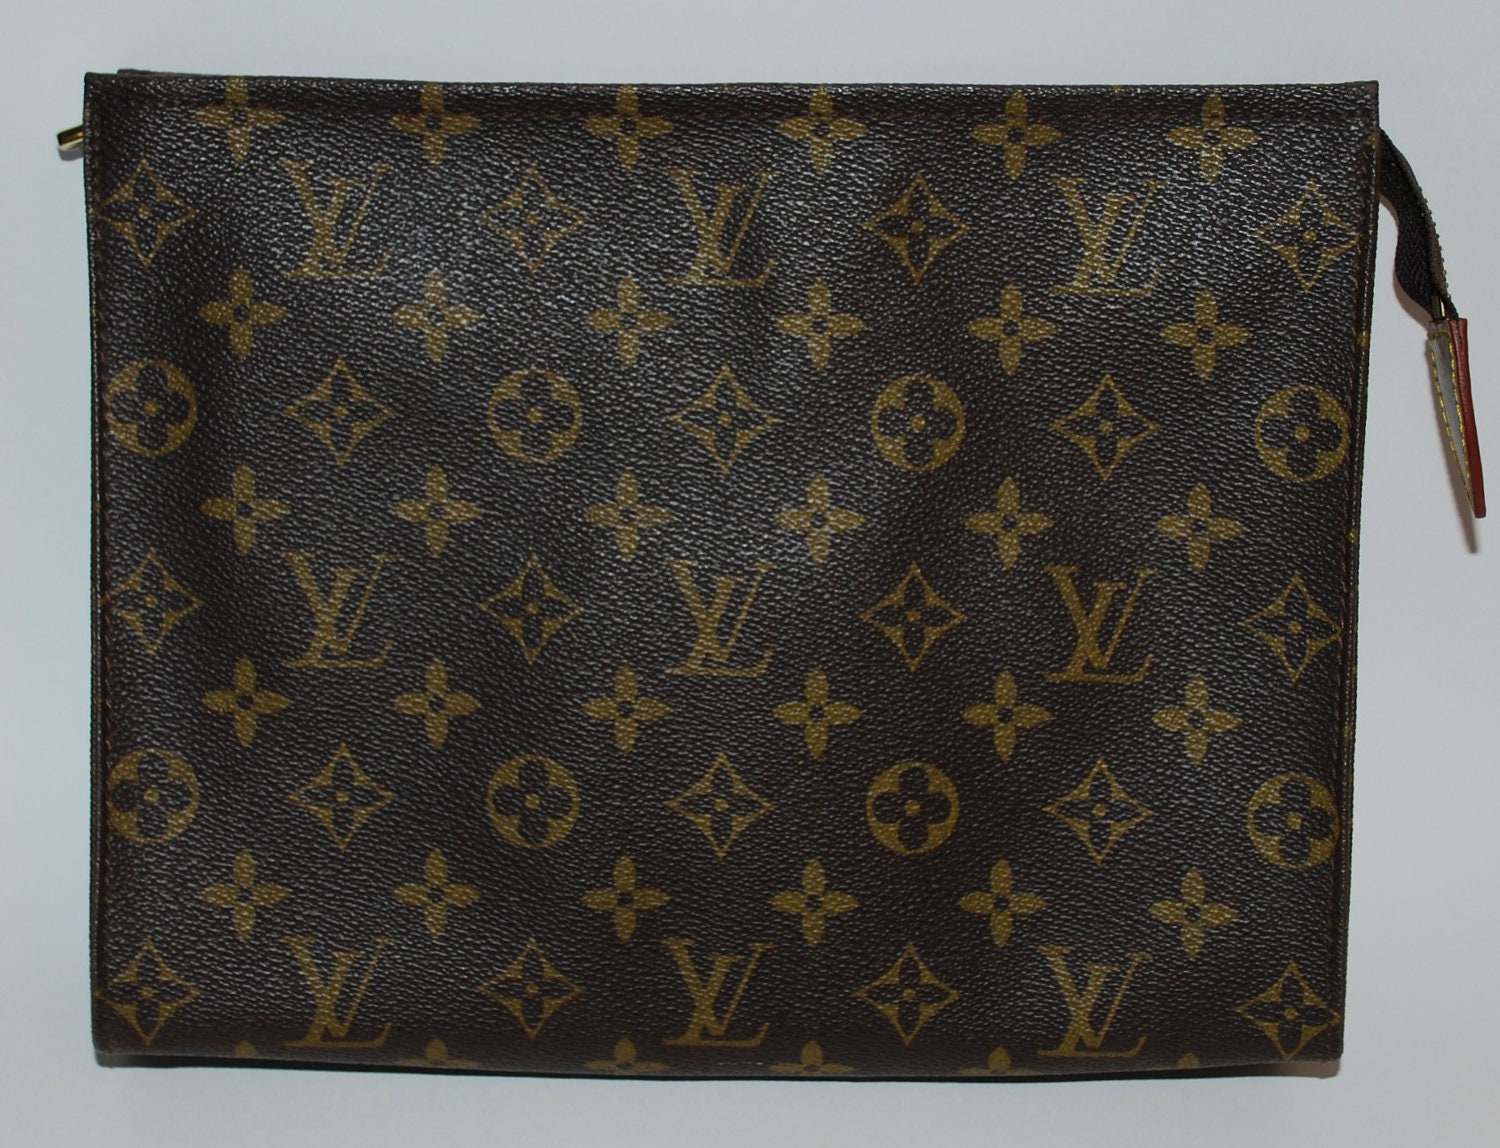 VIntage LOUIS VUITTON Monogram Large Clutch/ Cosmetic Bag/